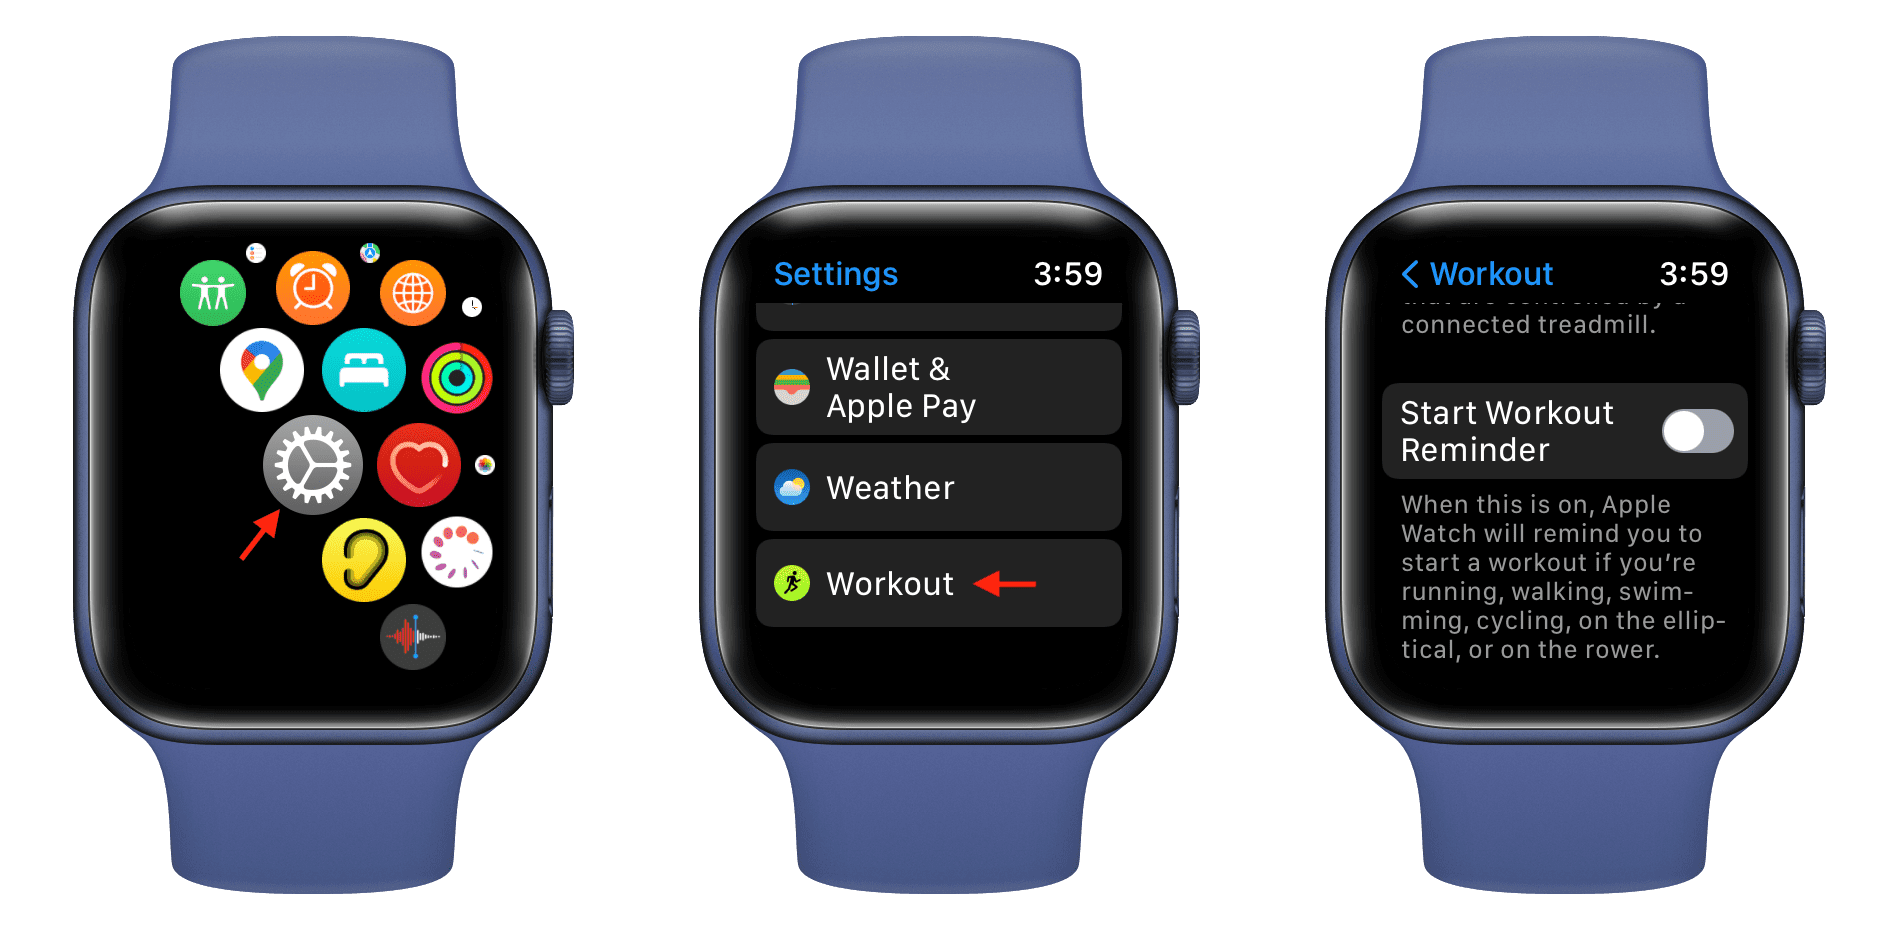 Turn-off-Start-Workout-Reminder-Apple-Watch